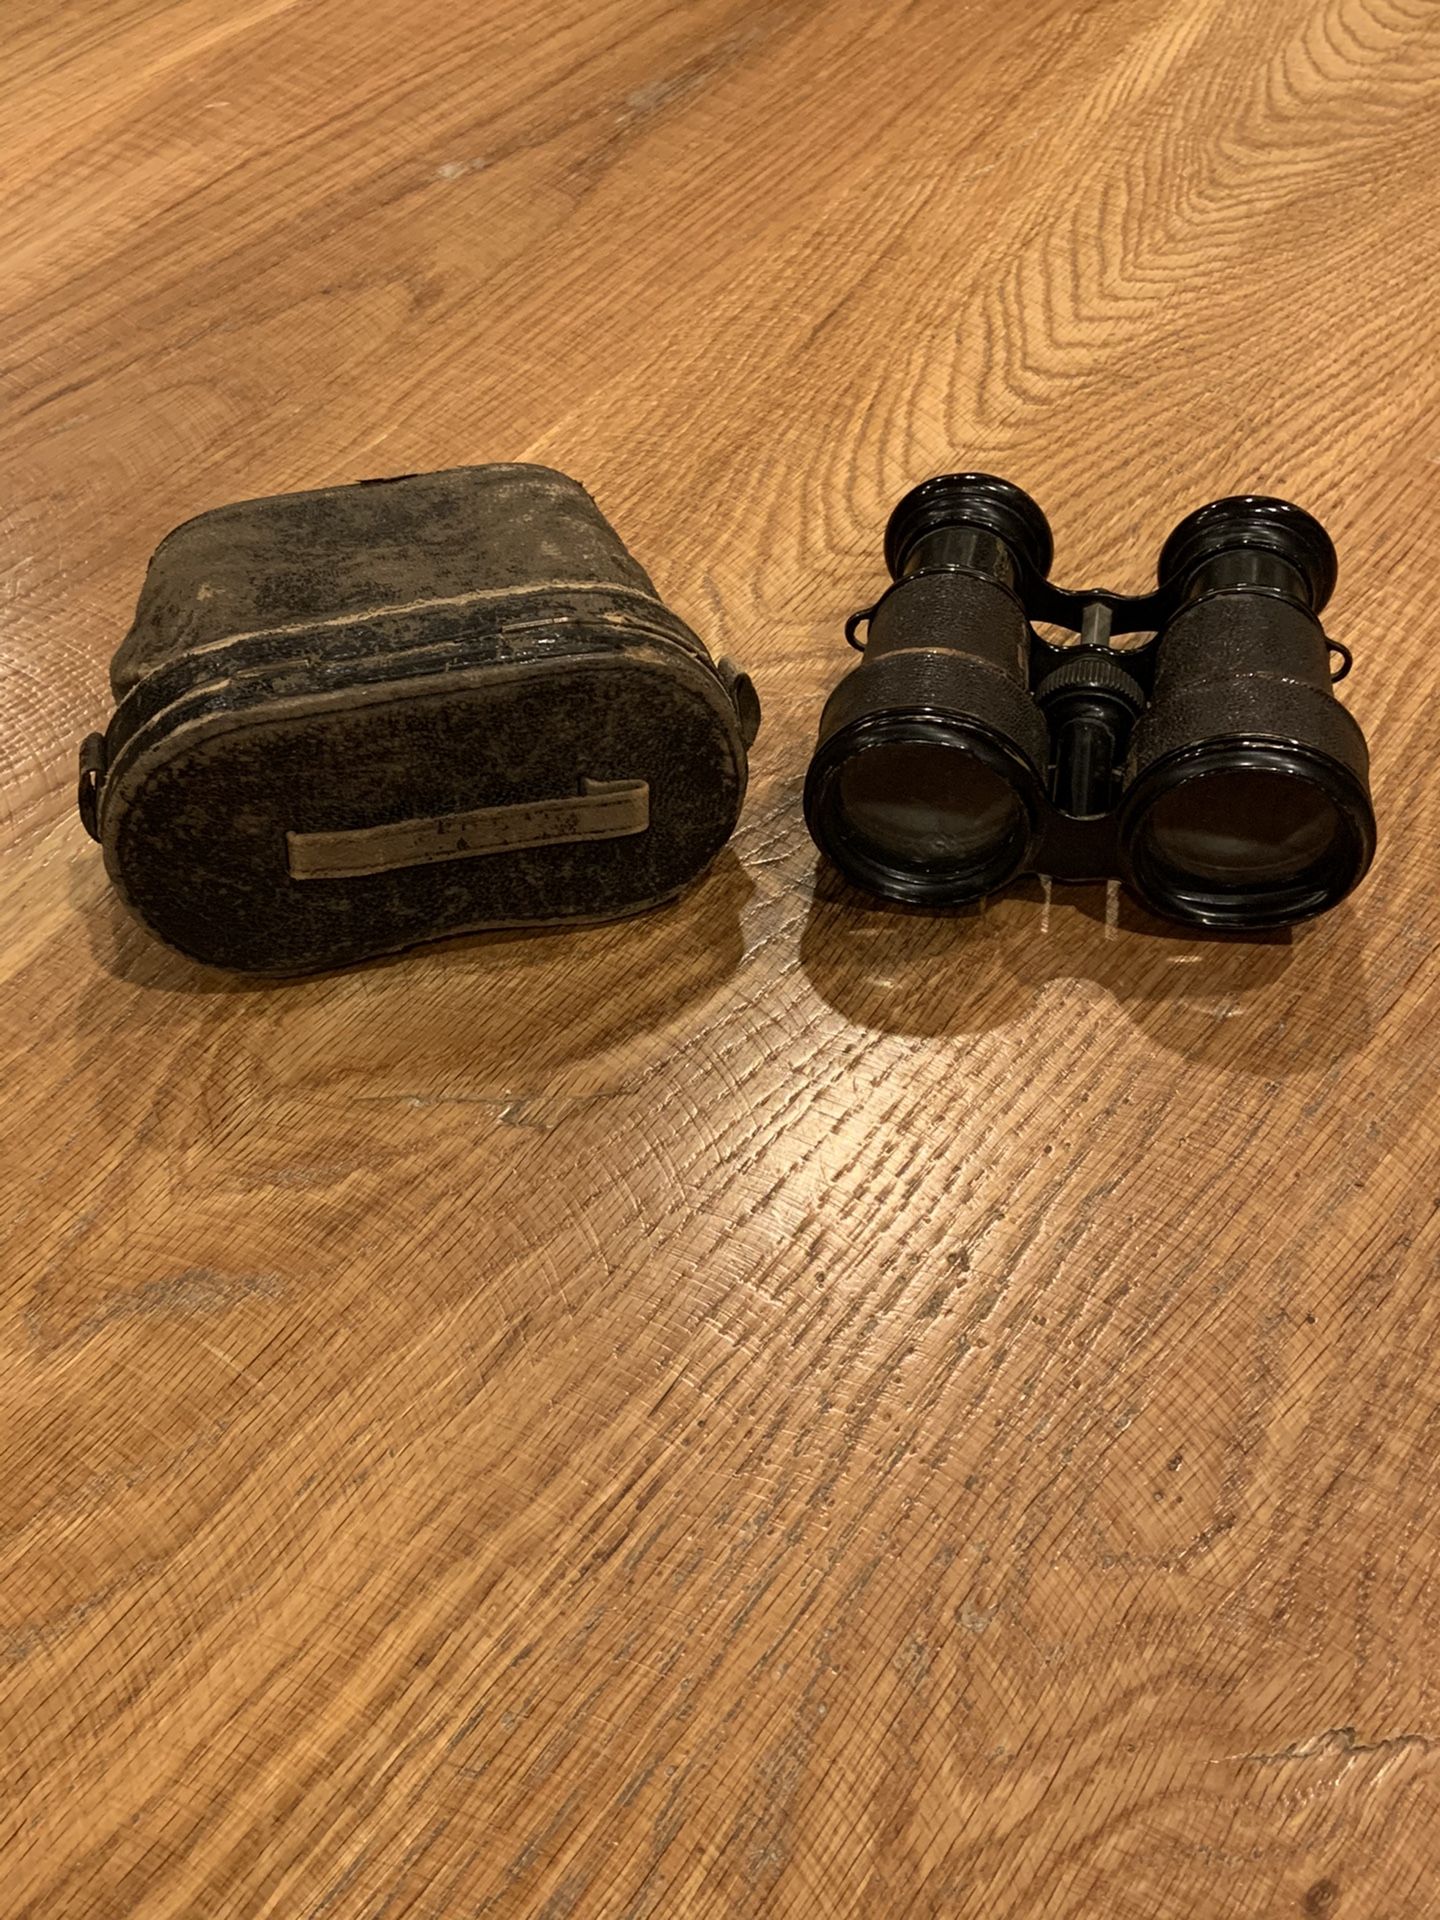 Vintage binoculars and case